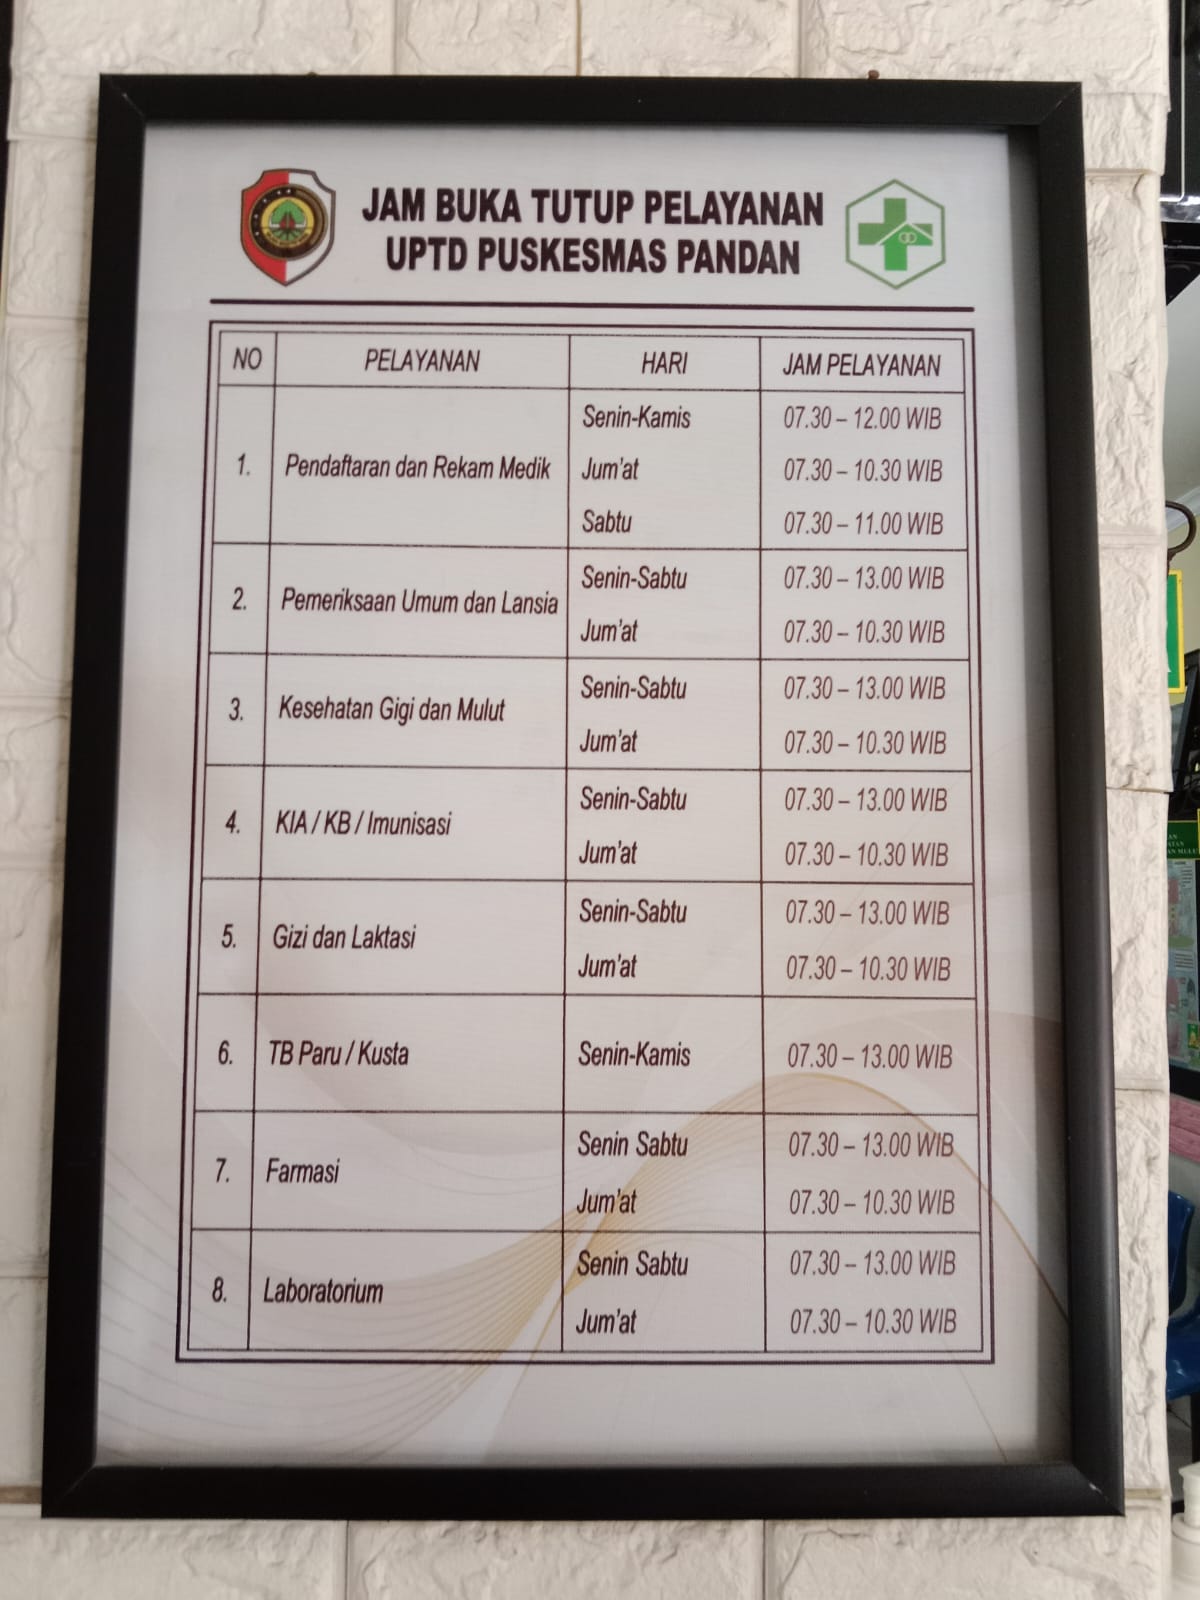 Jam Buka Tutup Pelayanan UPTD Puskesmas Pandan